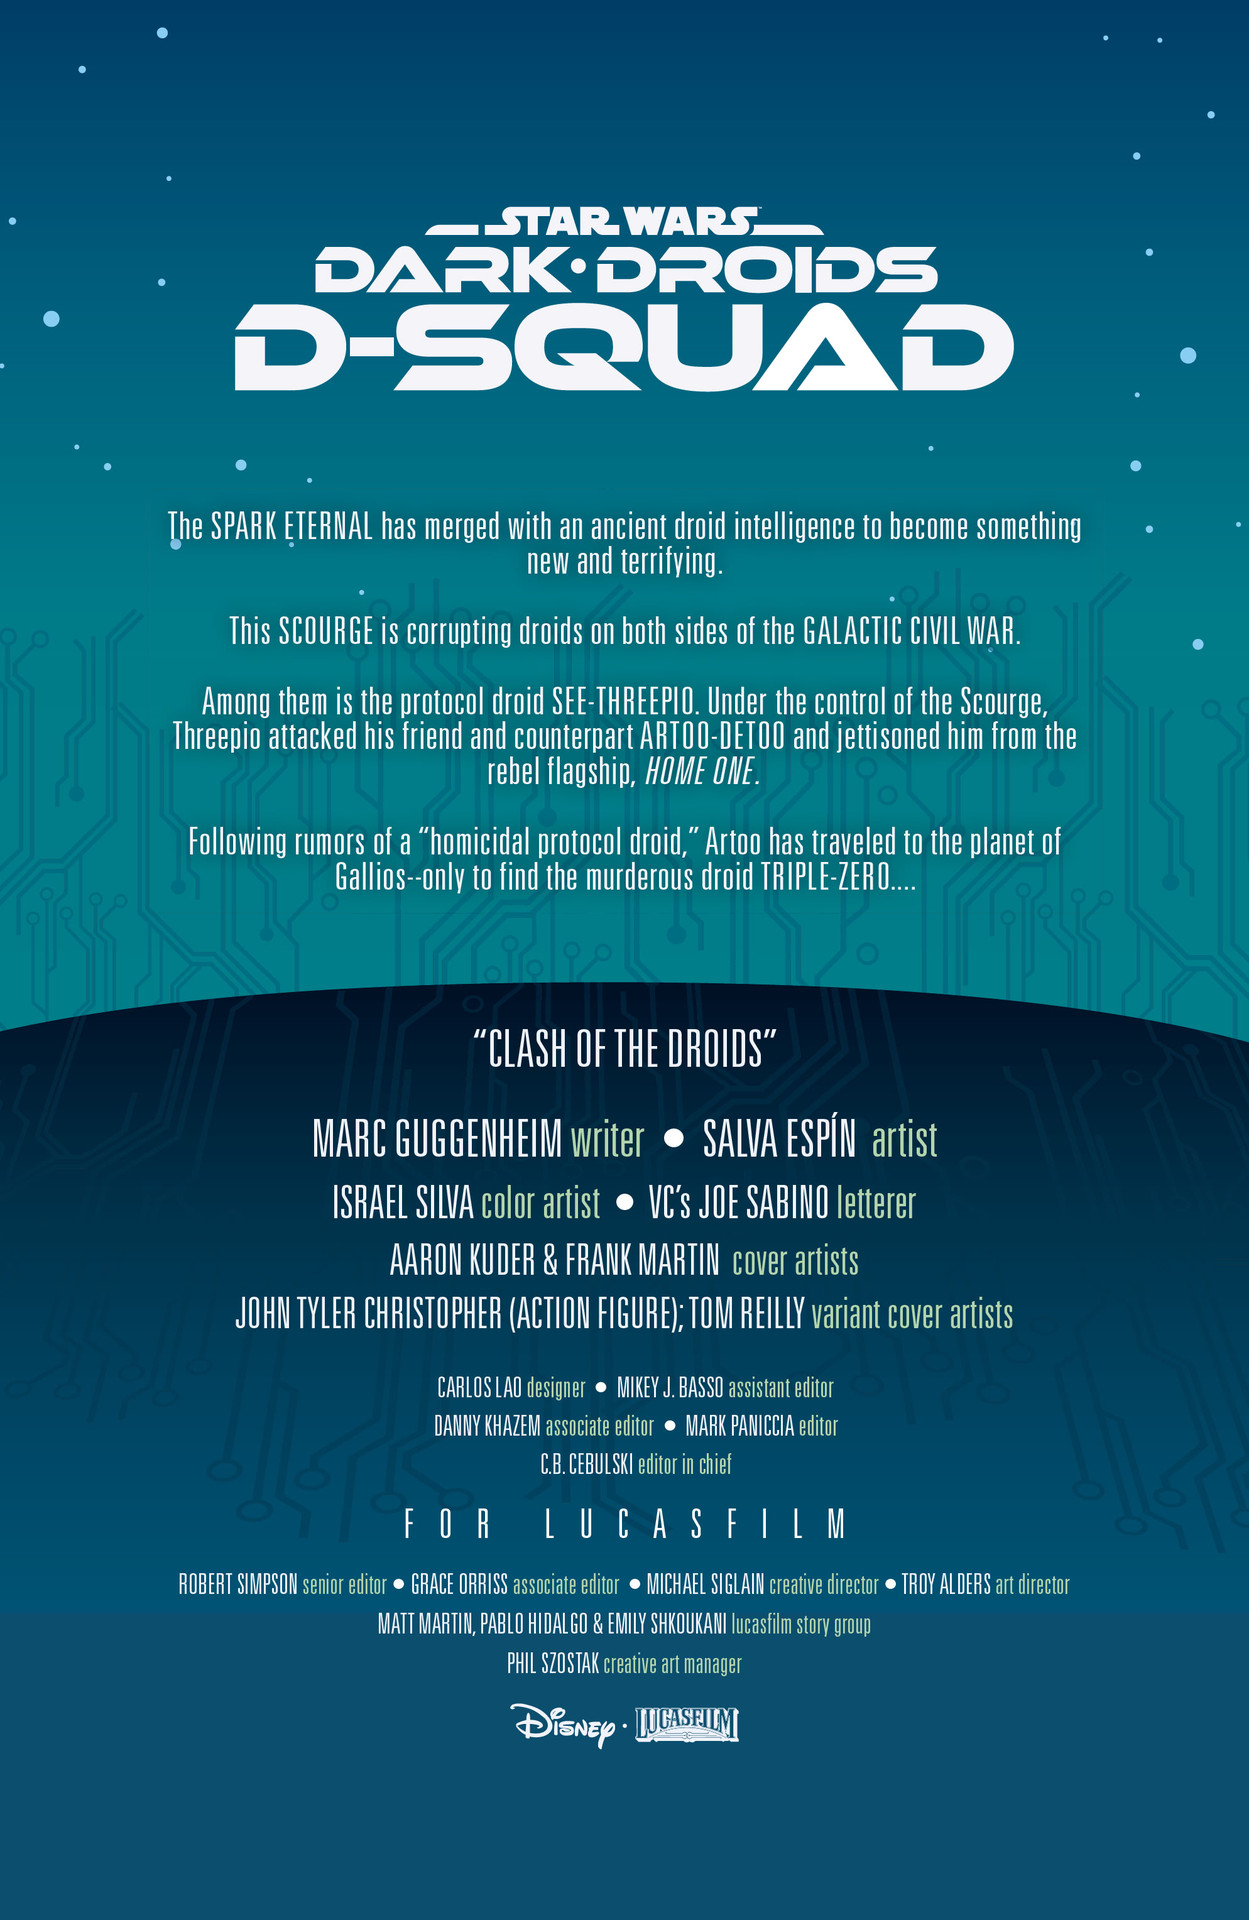 Read online Star Wars: Dark Droids - D-Squad comic -  Issue #2 - 2